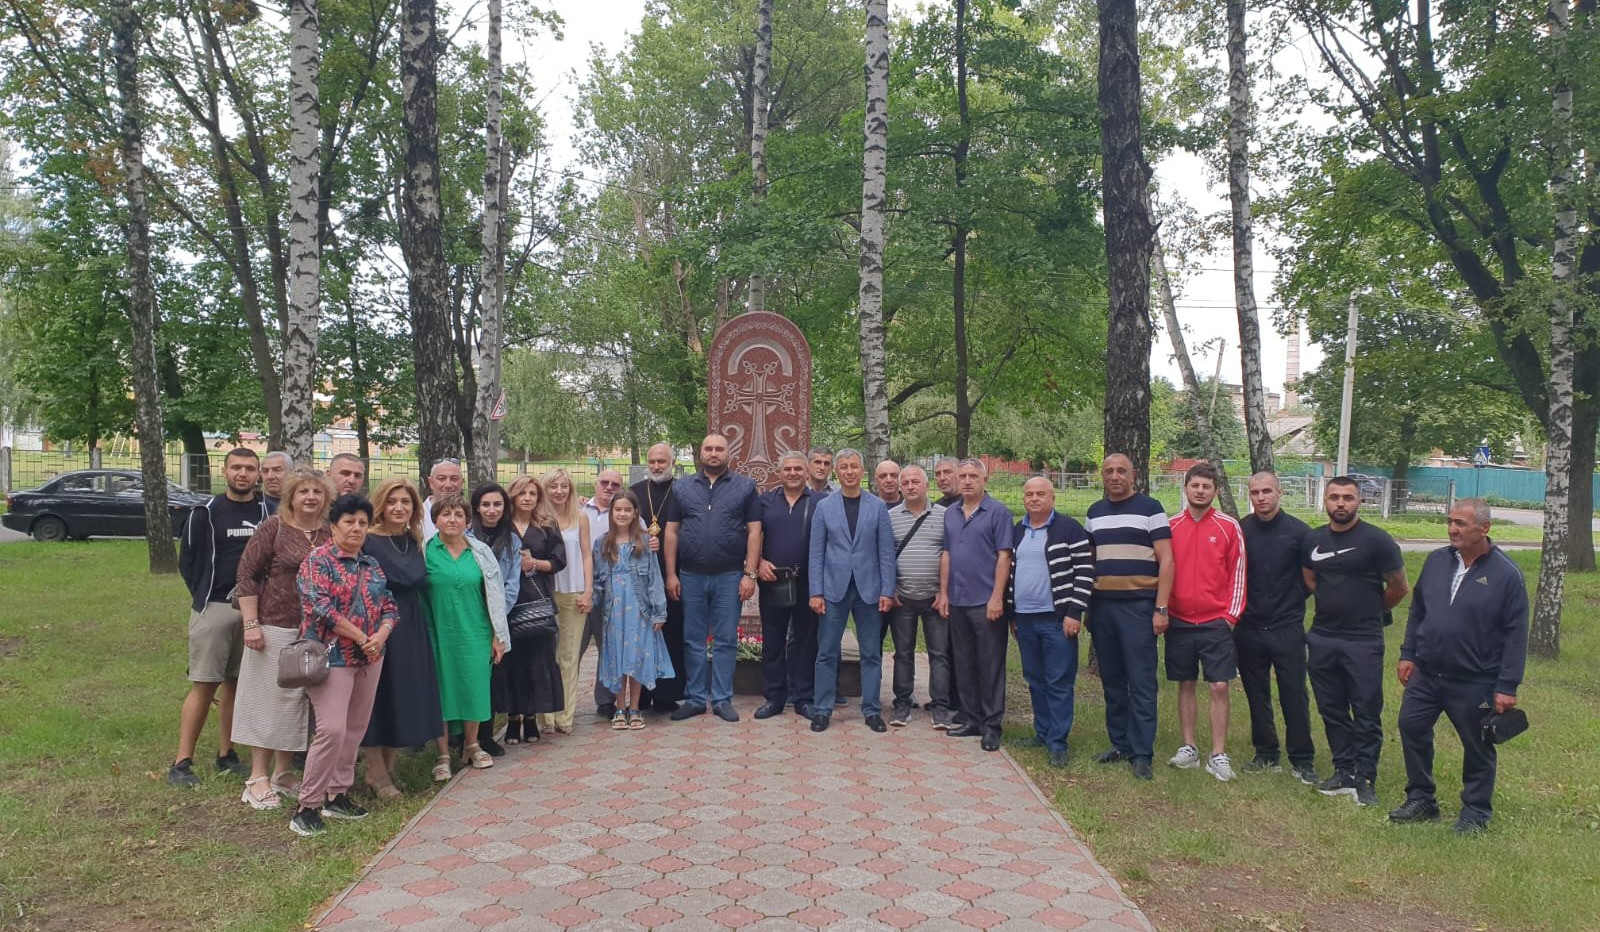 Ուկրաինայում ՀՀ դեսպանն այցելել է Խարկովի և Պոլտավայի մարզեր, հանդիպել հայ համայնքի ներկայացուցիչների հետ